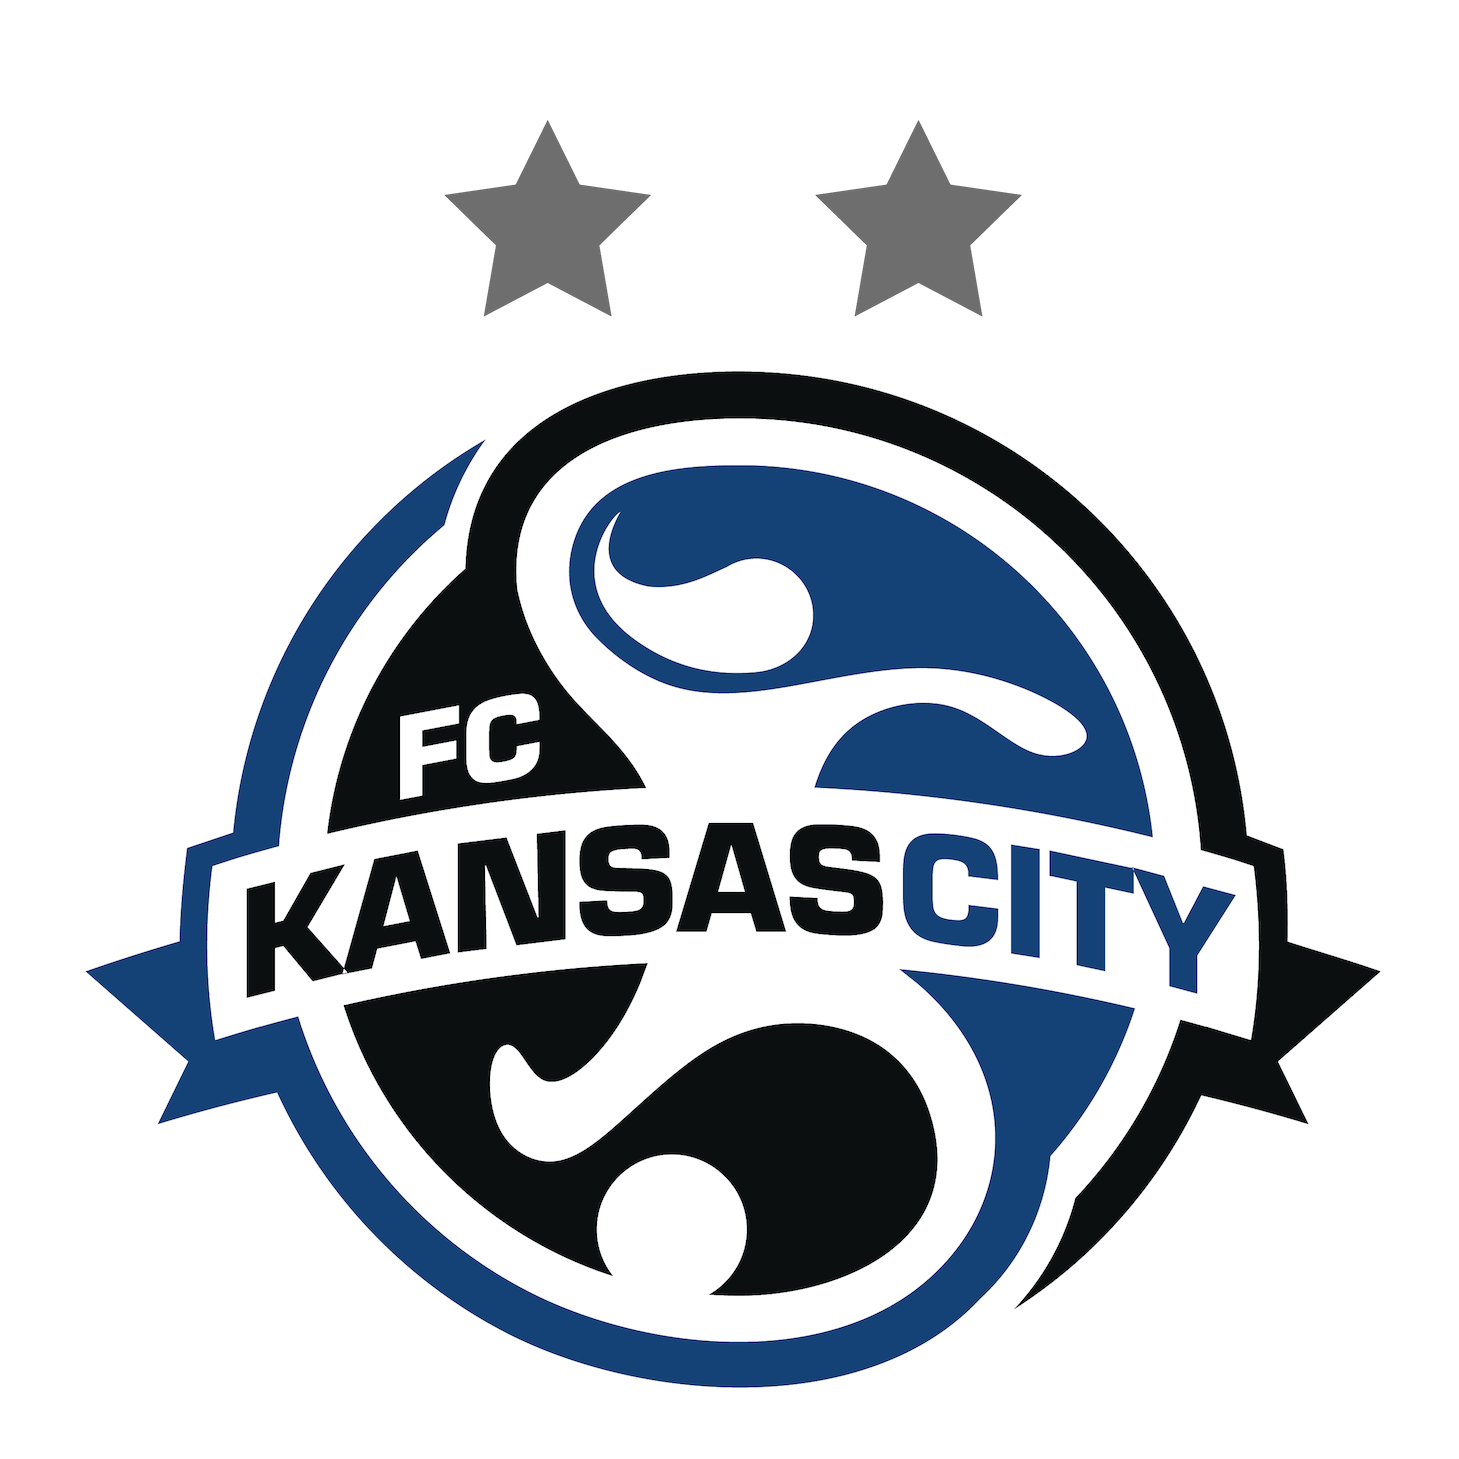 FC KANSAS CITY